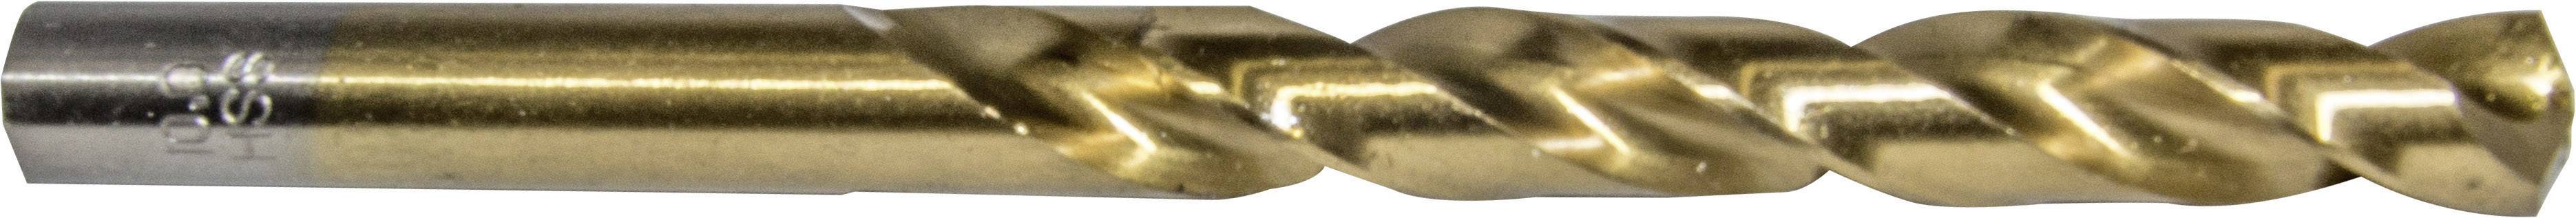 HELLER 29276 4 Metall-Spiralbohrer 1 Stück 11 mm Gesamtlänge 142 mm 1 St.